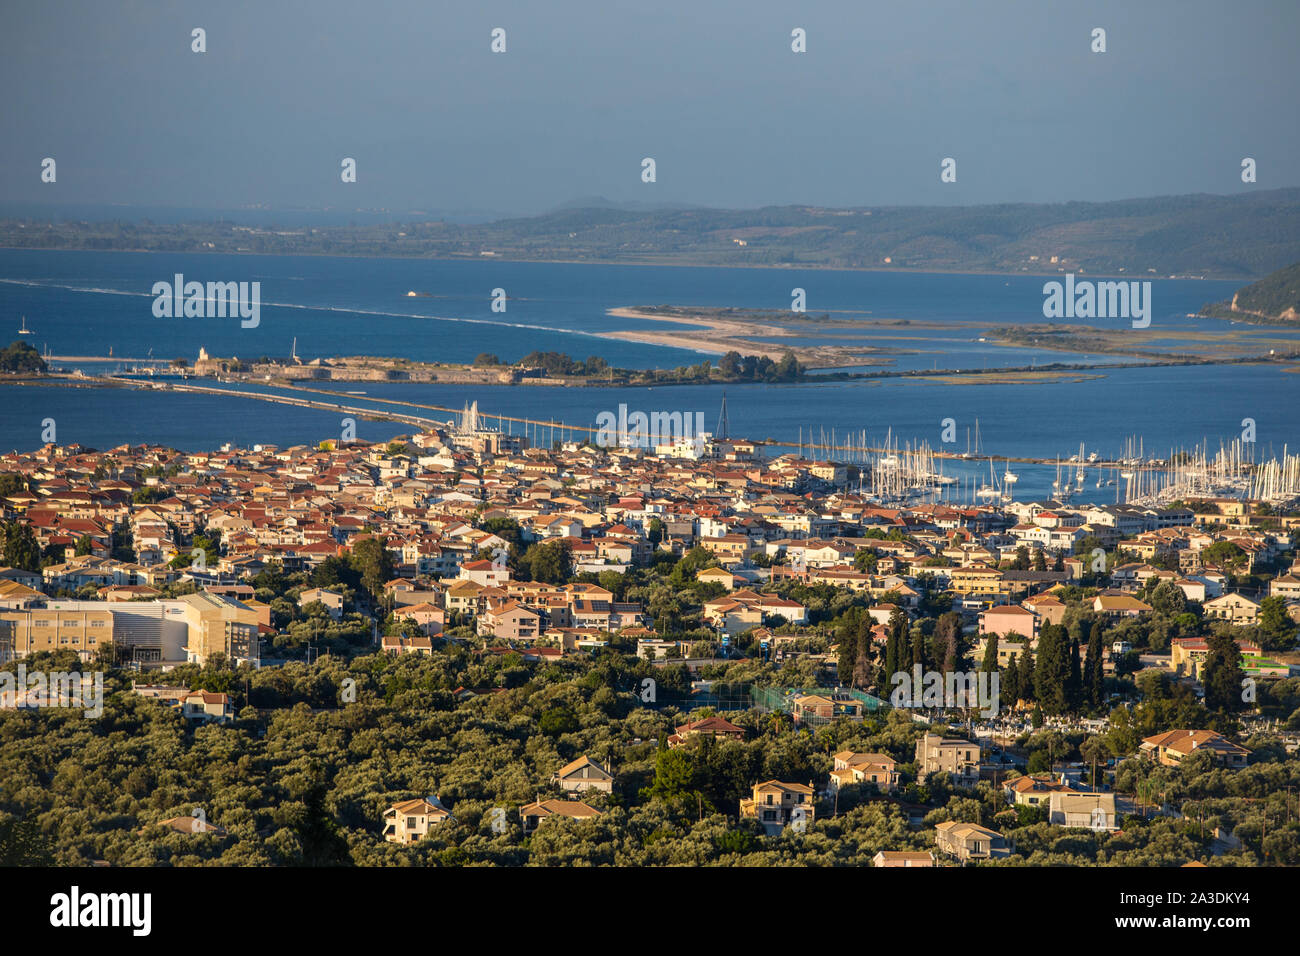 La ville de Lefkada et chaussée sur l'île de Lefkada, Grèce / Athènes Banque D'Images